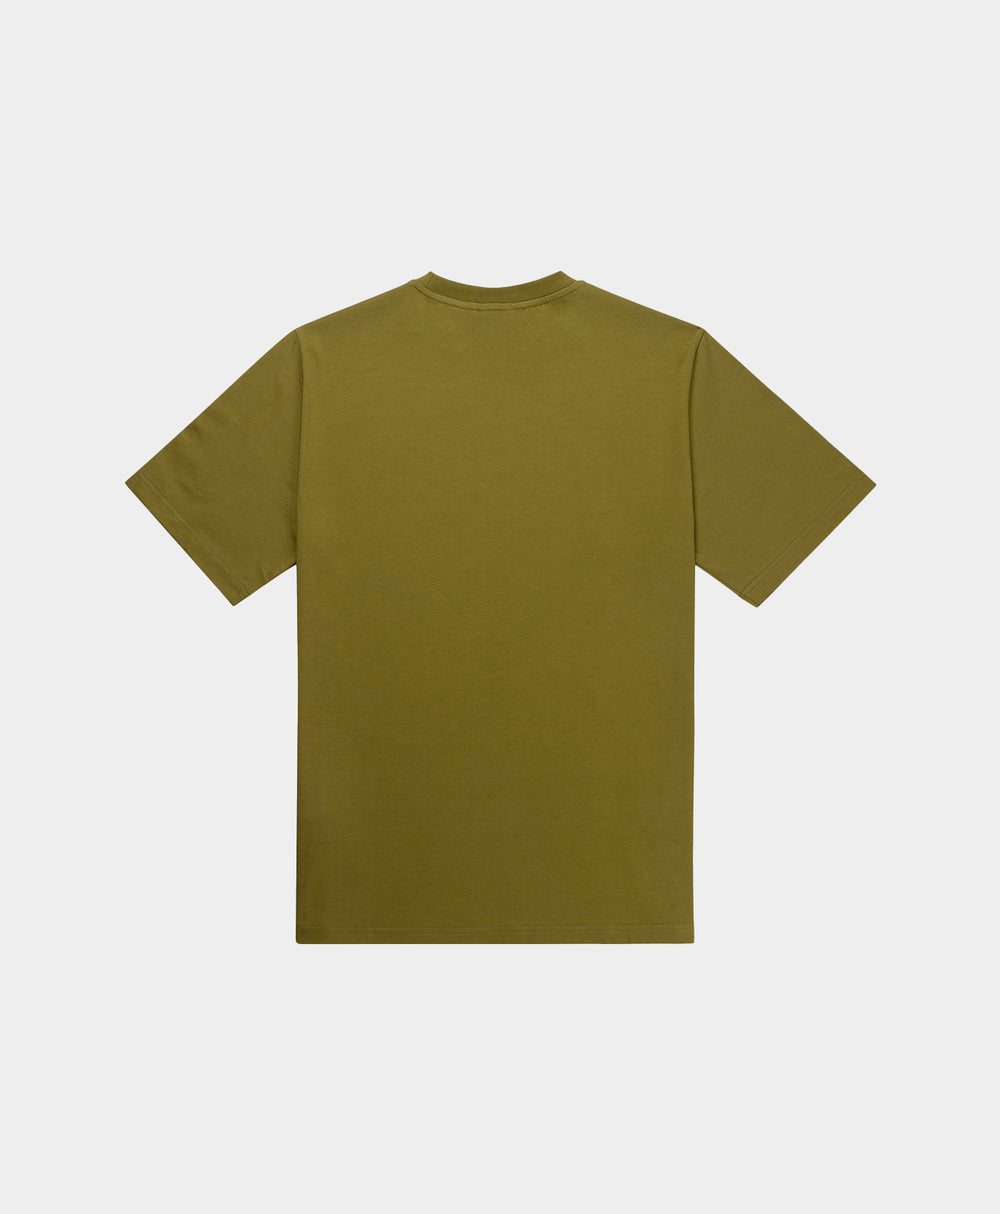 DP - Fir Green Purf T-Shirt - Packshot - Rear